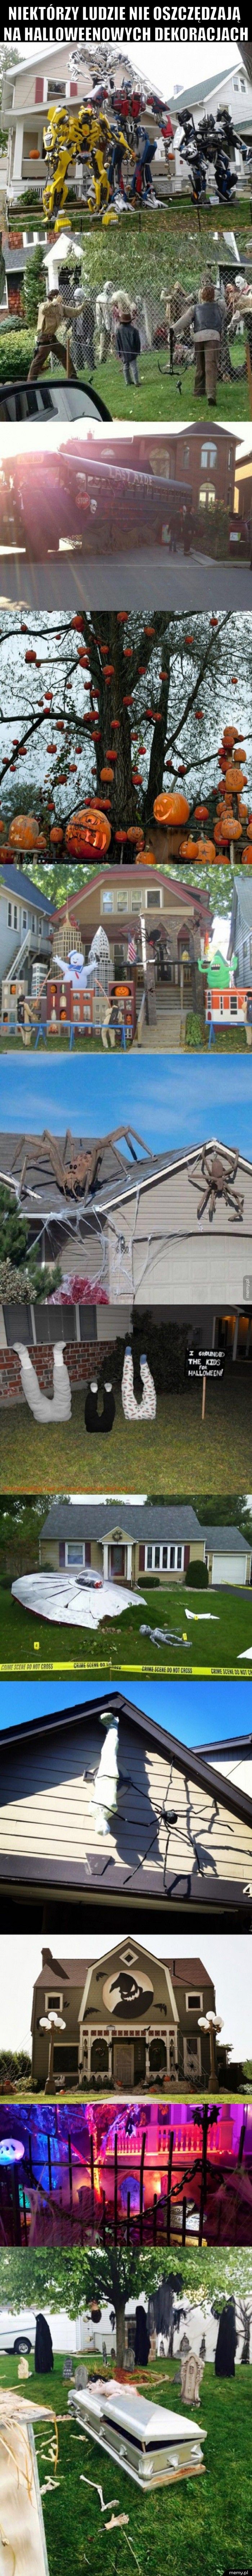 Niektórzy ludzie nie oszczędzają na halloweenowych dekoracjach 